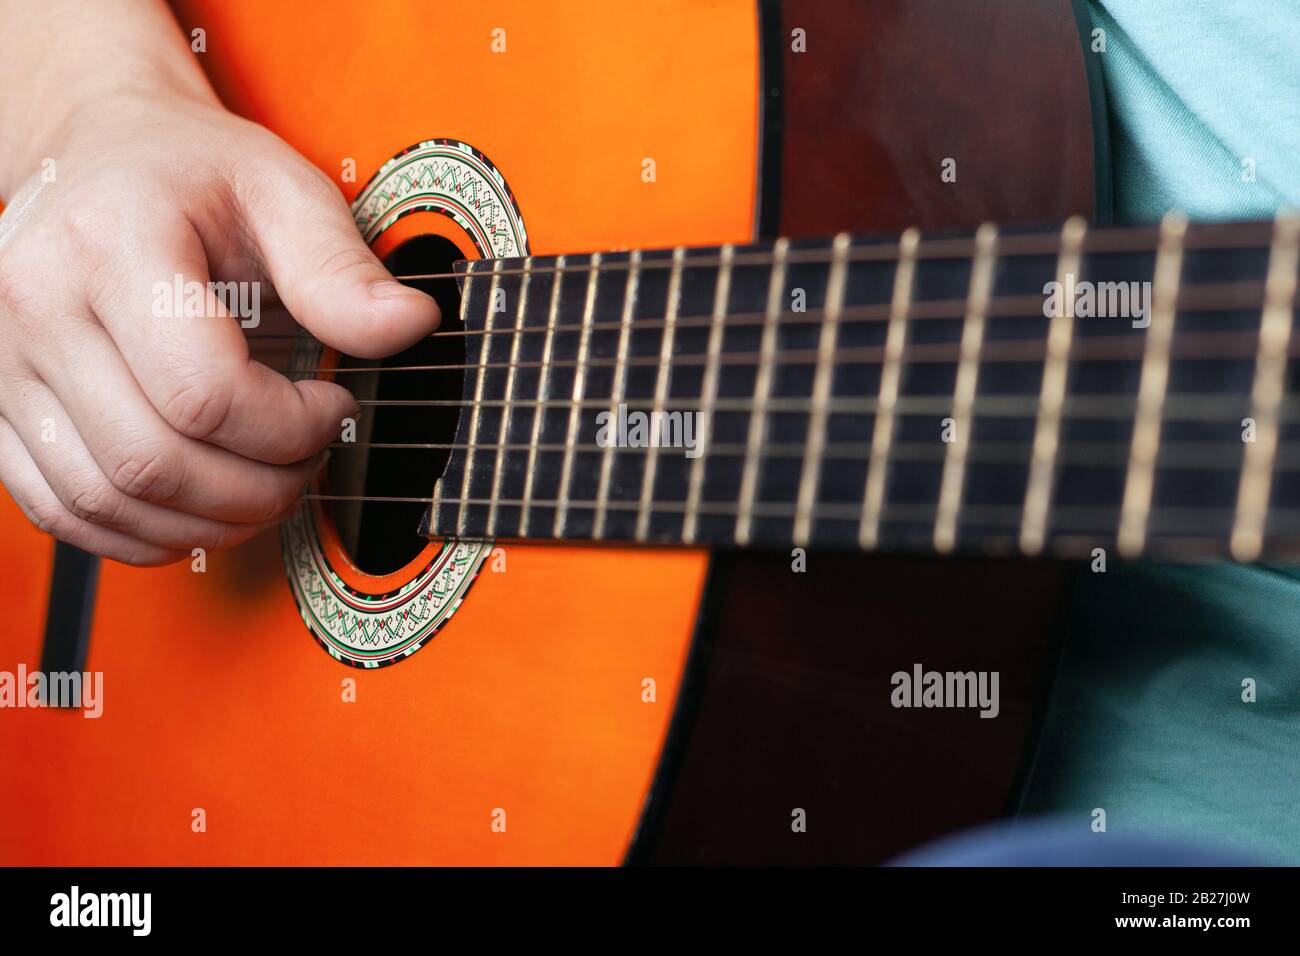 Männliche Hand spielt akustische Gitarrensaiten, die lernen, ein Musikinstrument in oranger Farbe in Nahaufnahme zu spielen. Stockfoto